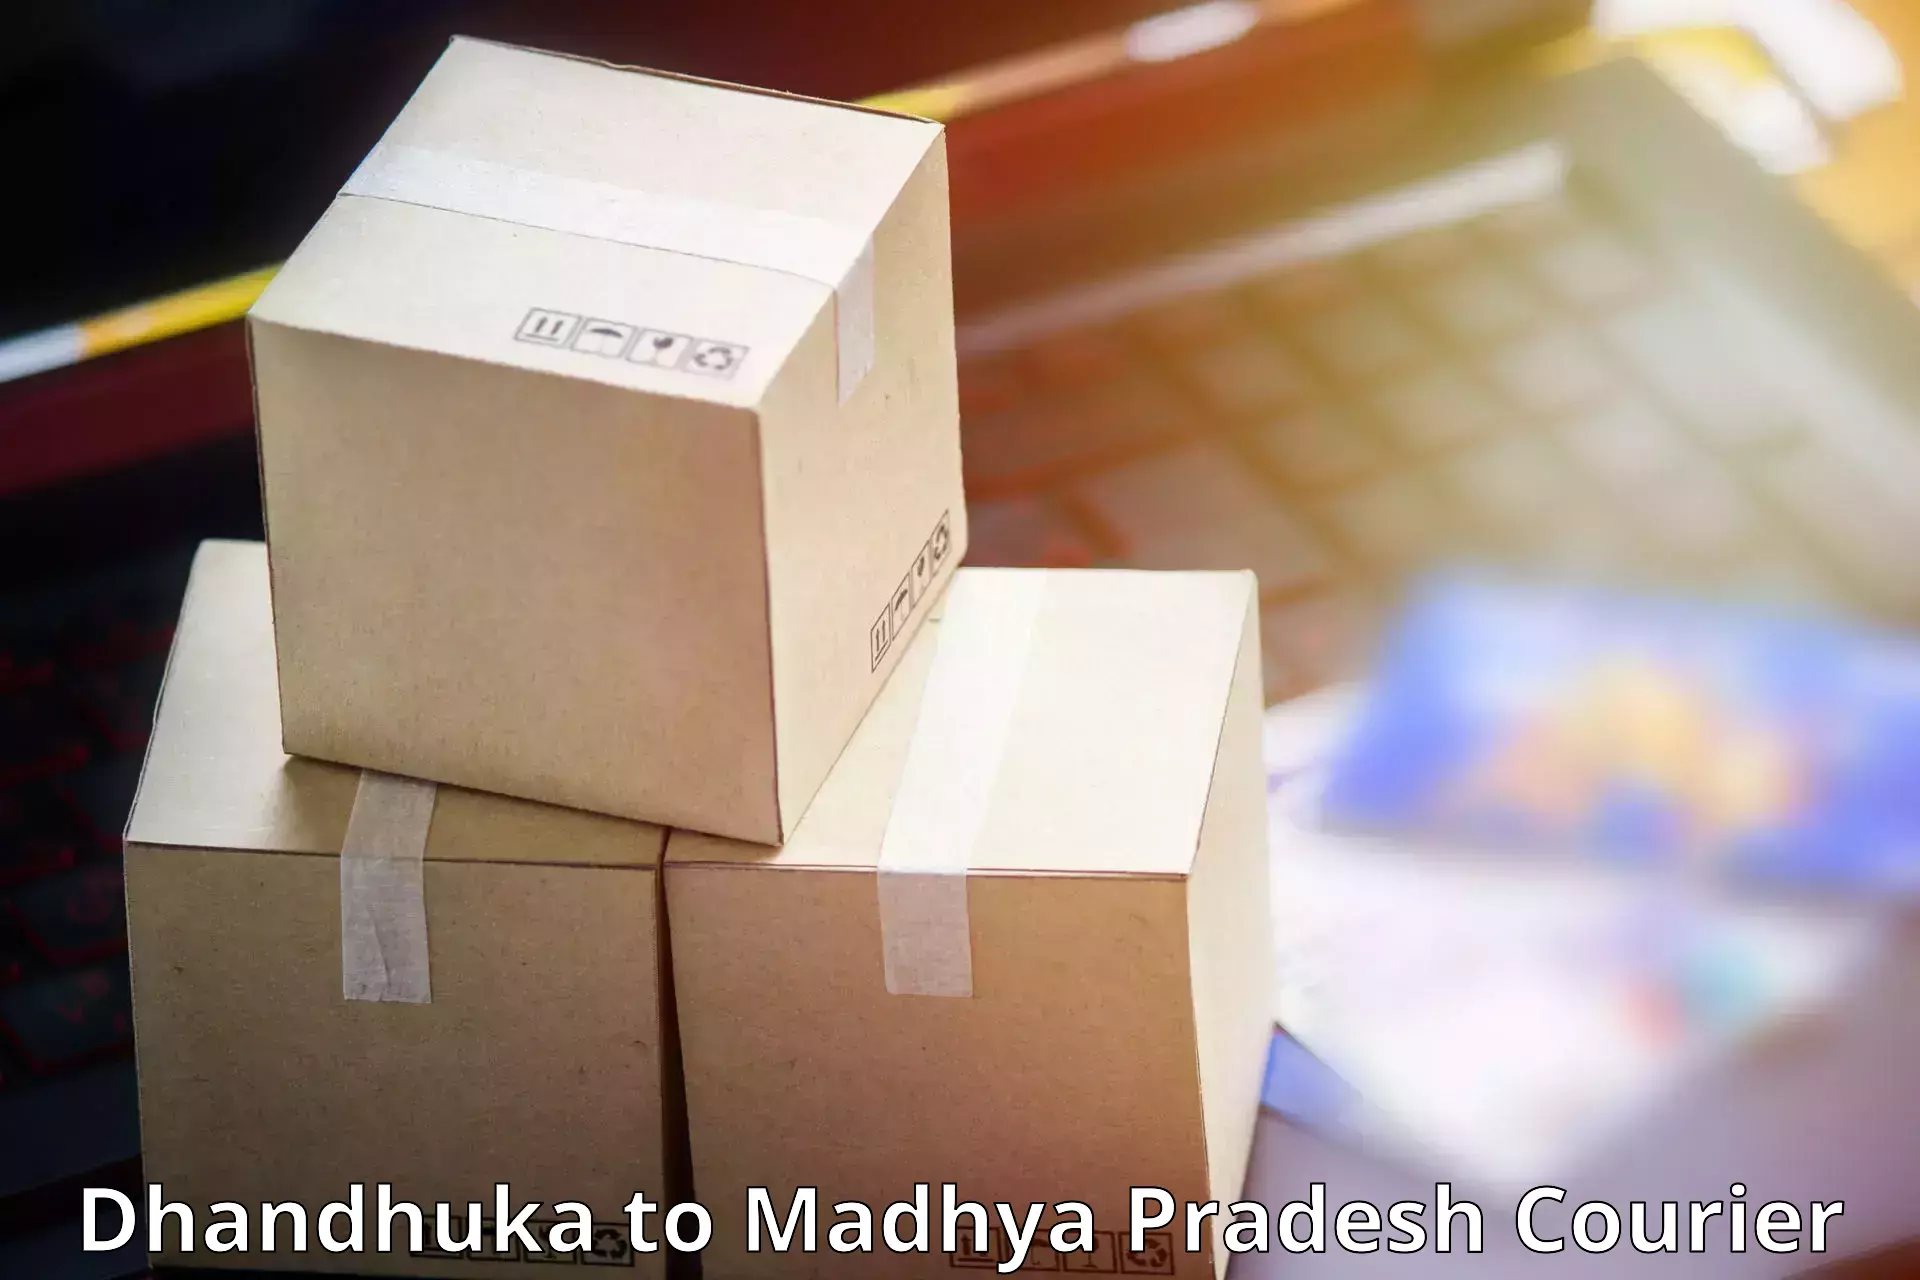 24/7 courier service Dhandhuka to Vidisha